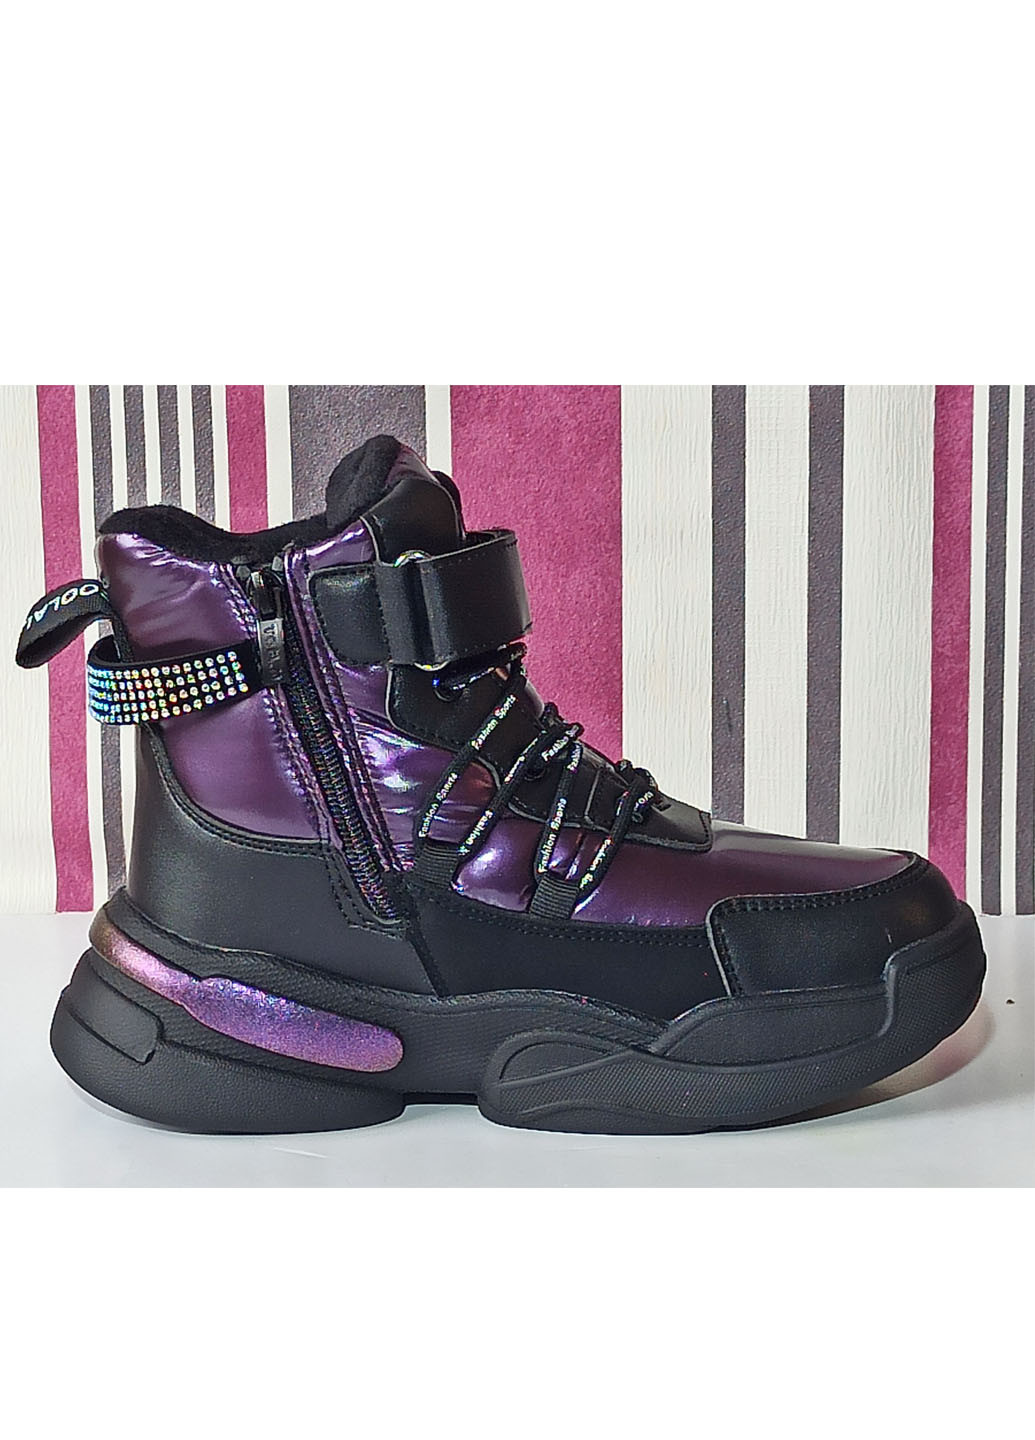 Фиолетовые повседневные зимние детские зимние ботинки для девочки на овчине том м 10374u фиолетовые Tom.M